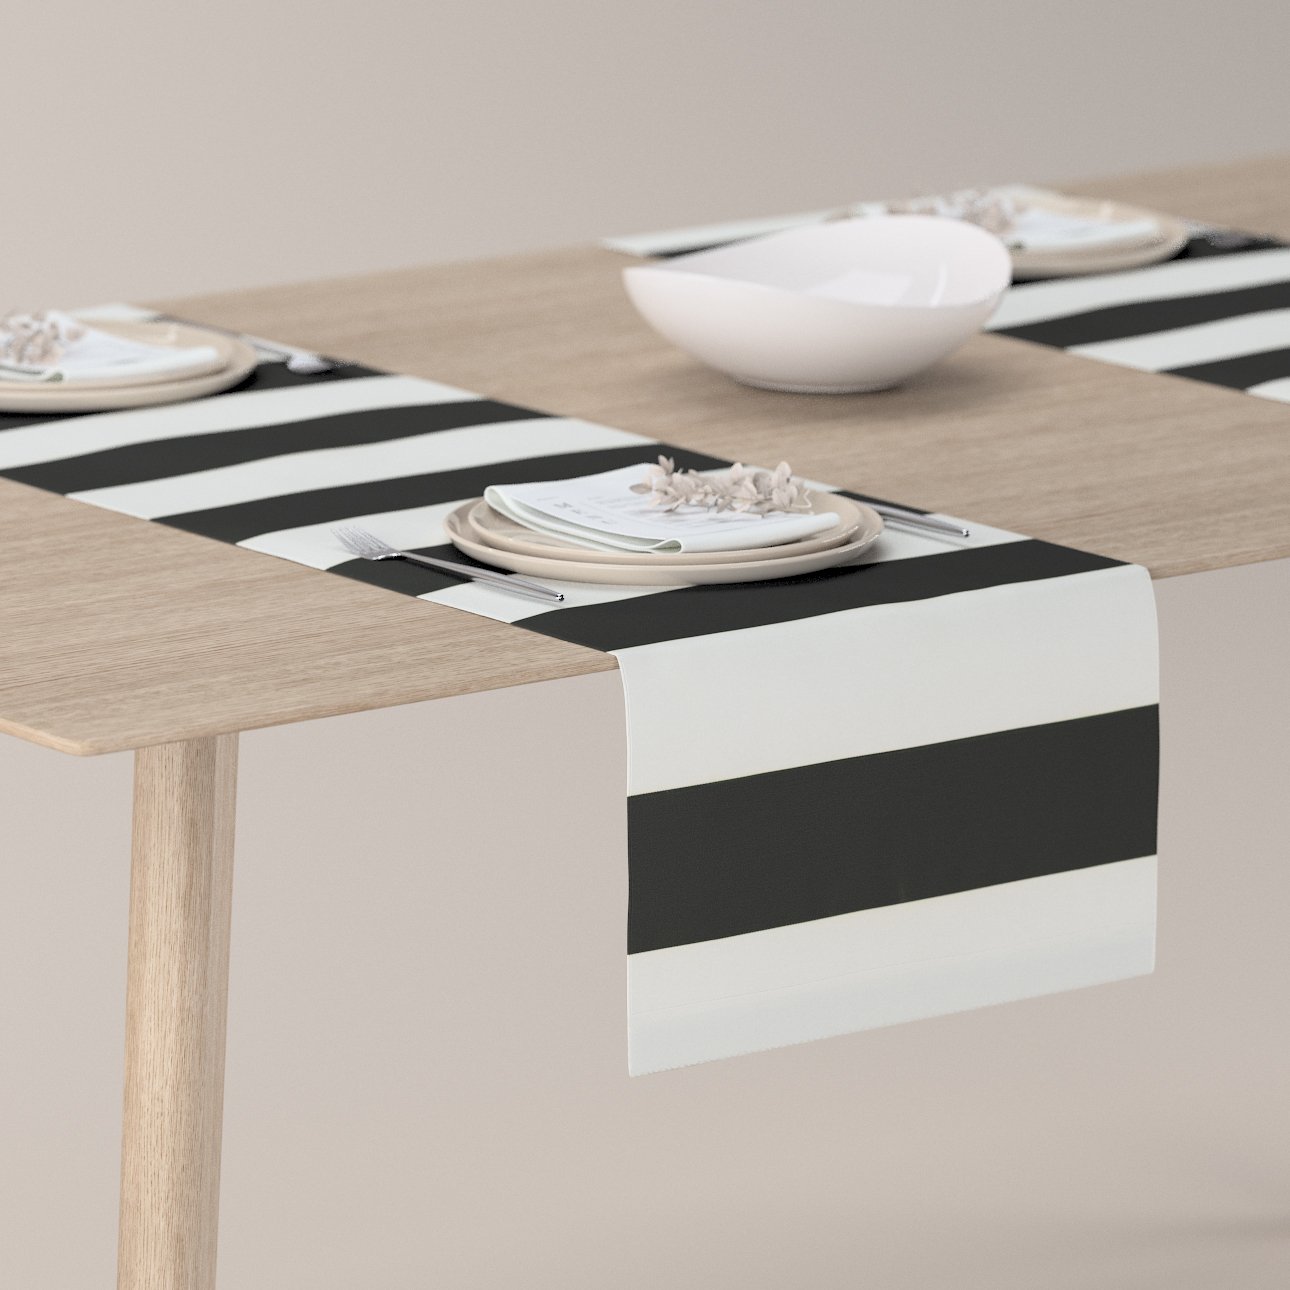 Tischläufer, x 137-53, schwarz-weiß, 130 40 cm